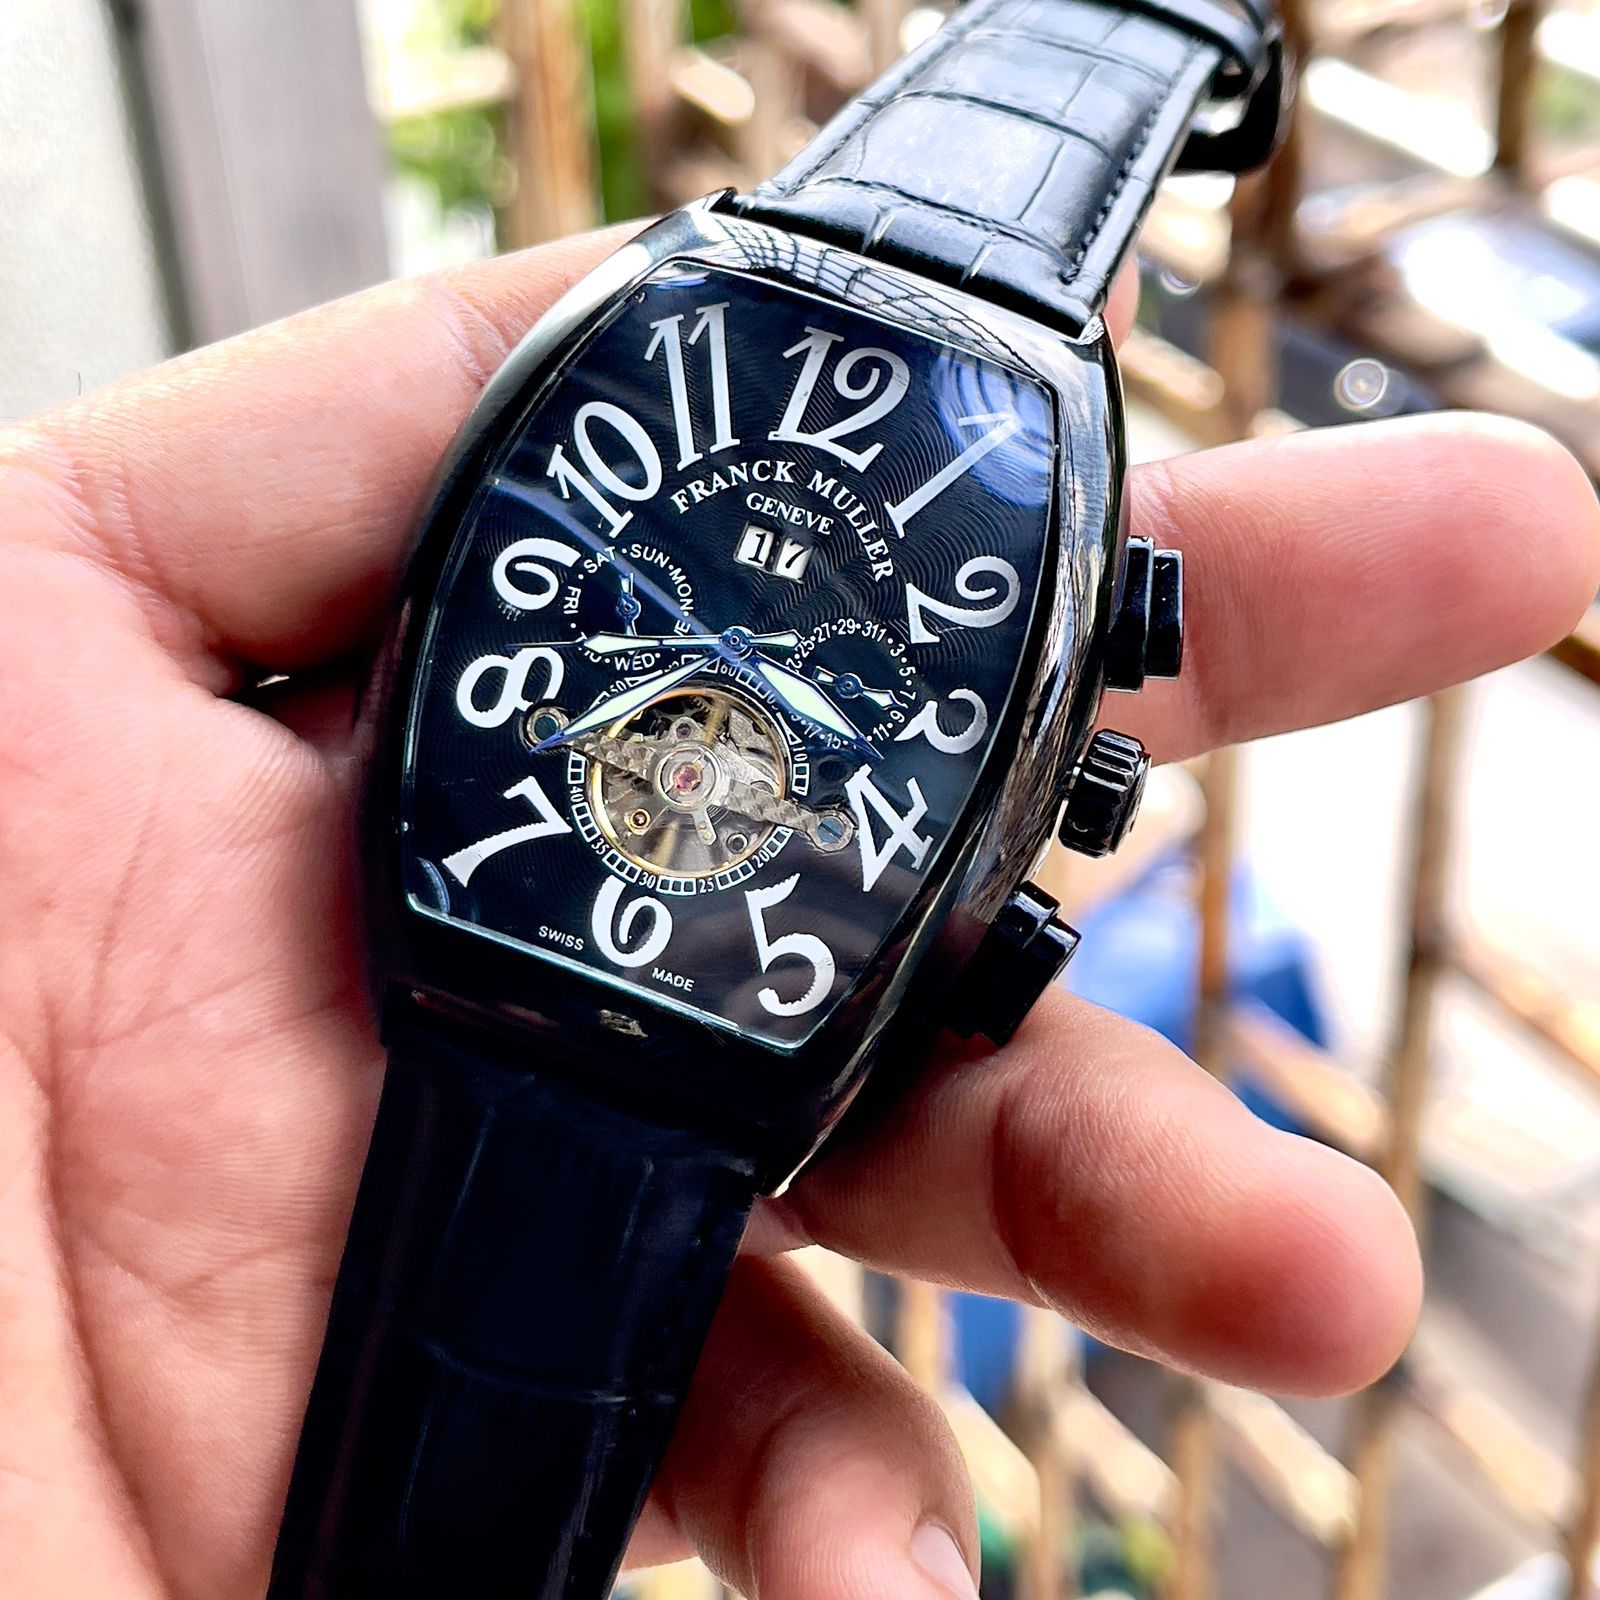 Amazing Franck M Luxury watch - AmazingBaba